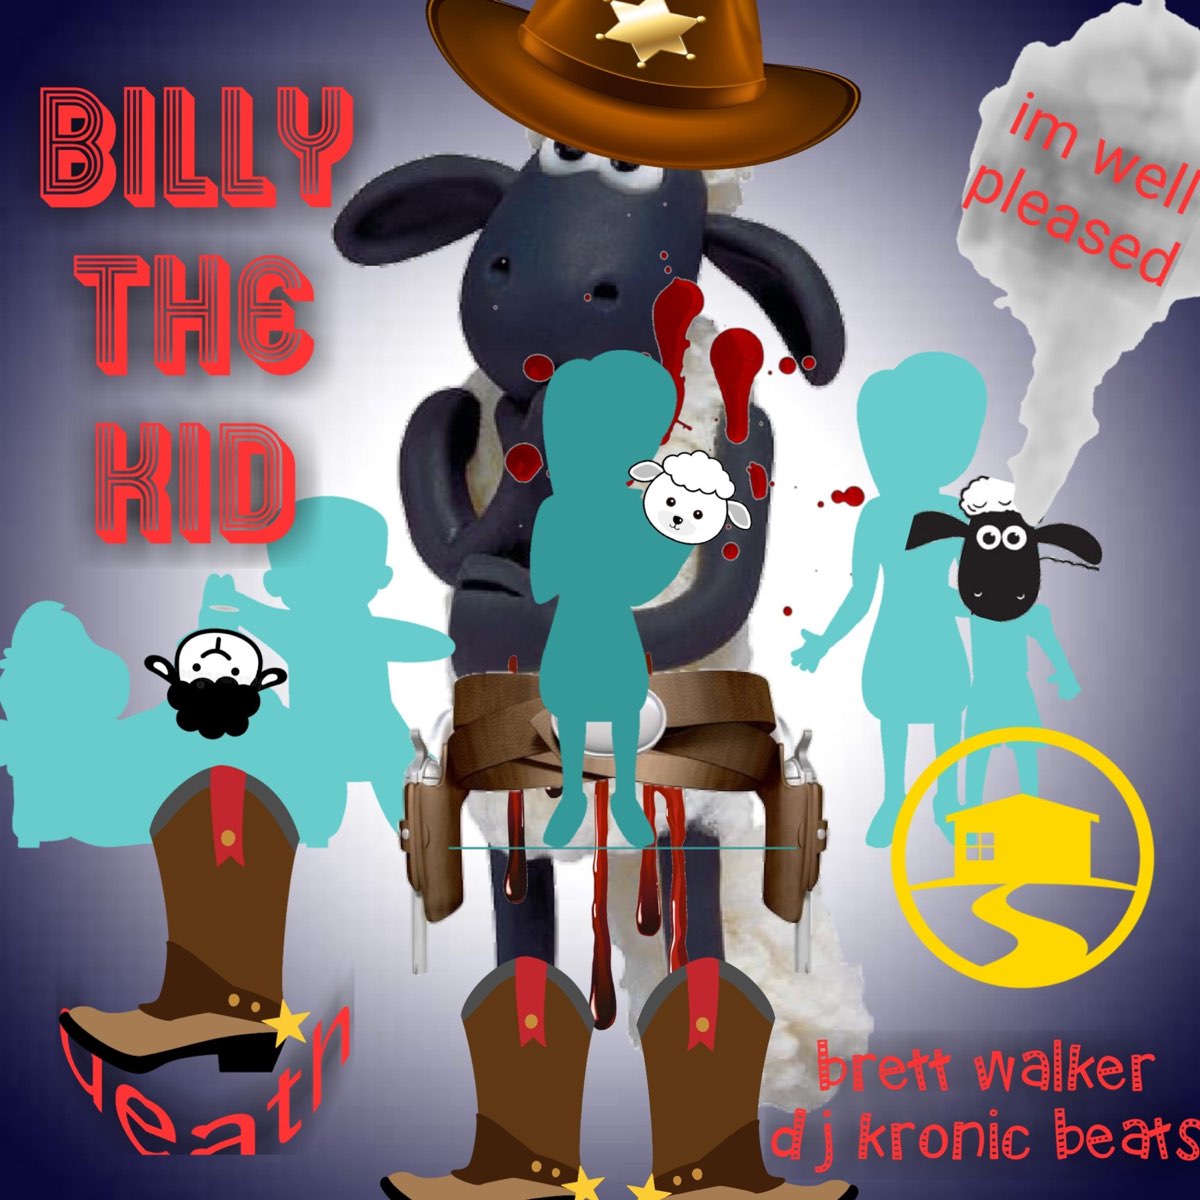 Billy the kid (feat. Kronic beats) - Single by Brett Walker on Music